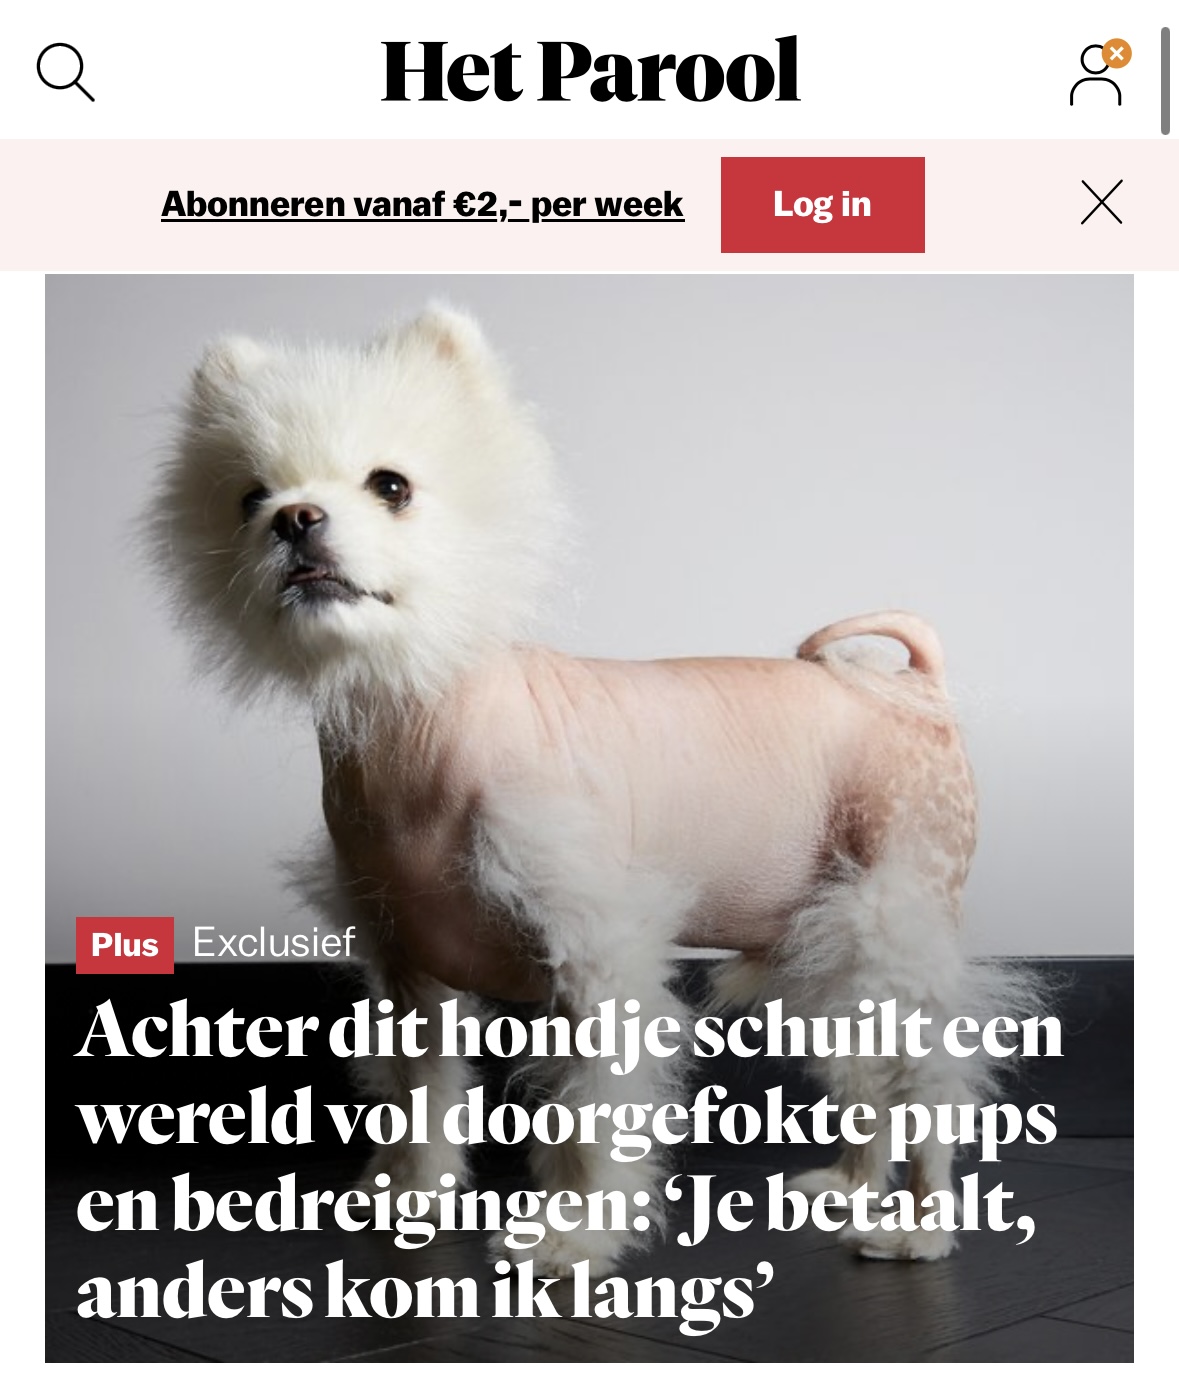 Achter dit hondje schuilt een wereld vol doorgefokte pups en bedreigingen: ‘Hij zei: je betaalt die 3500 euro, anders kom ik langs’